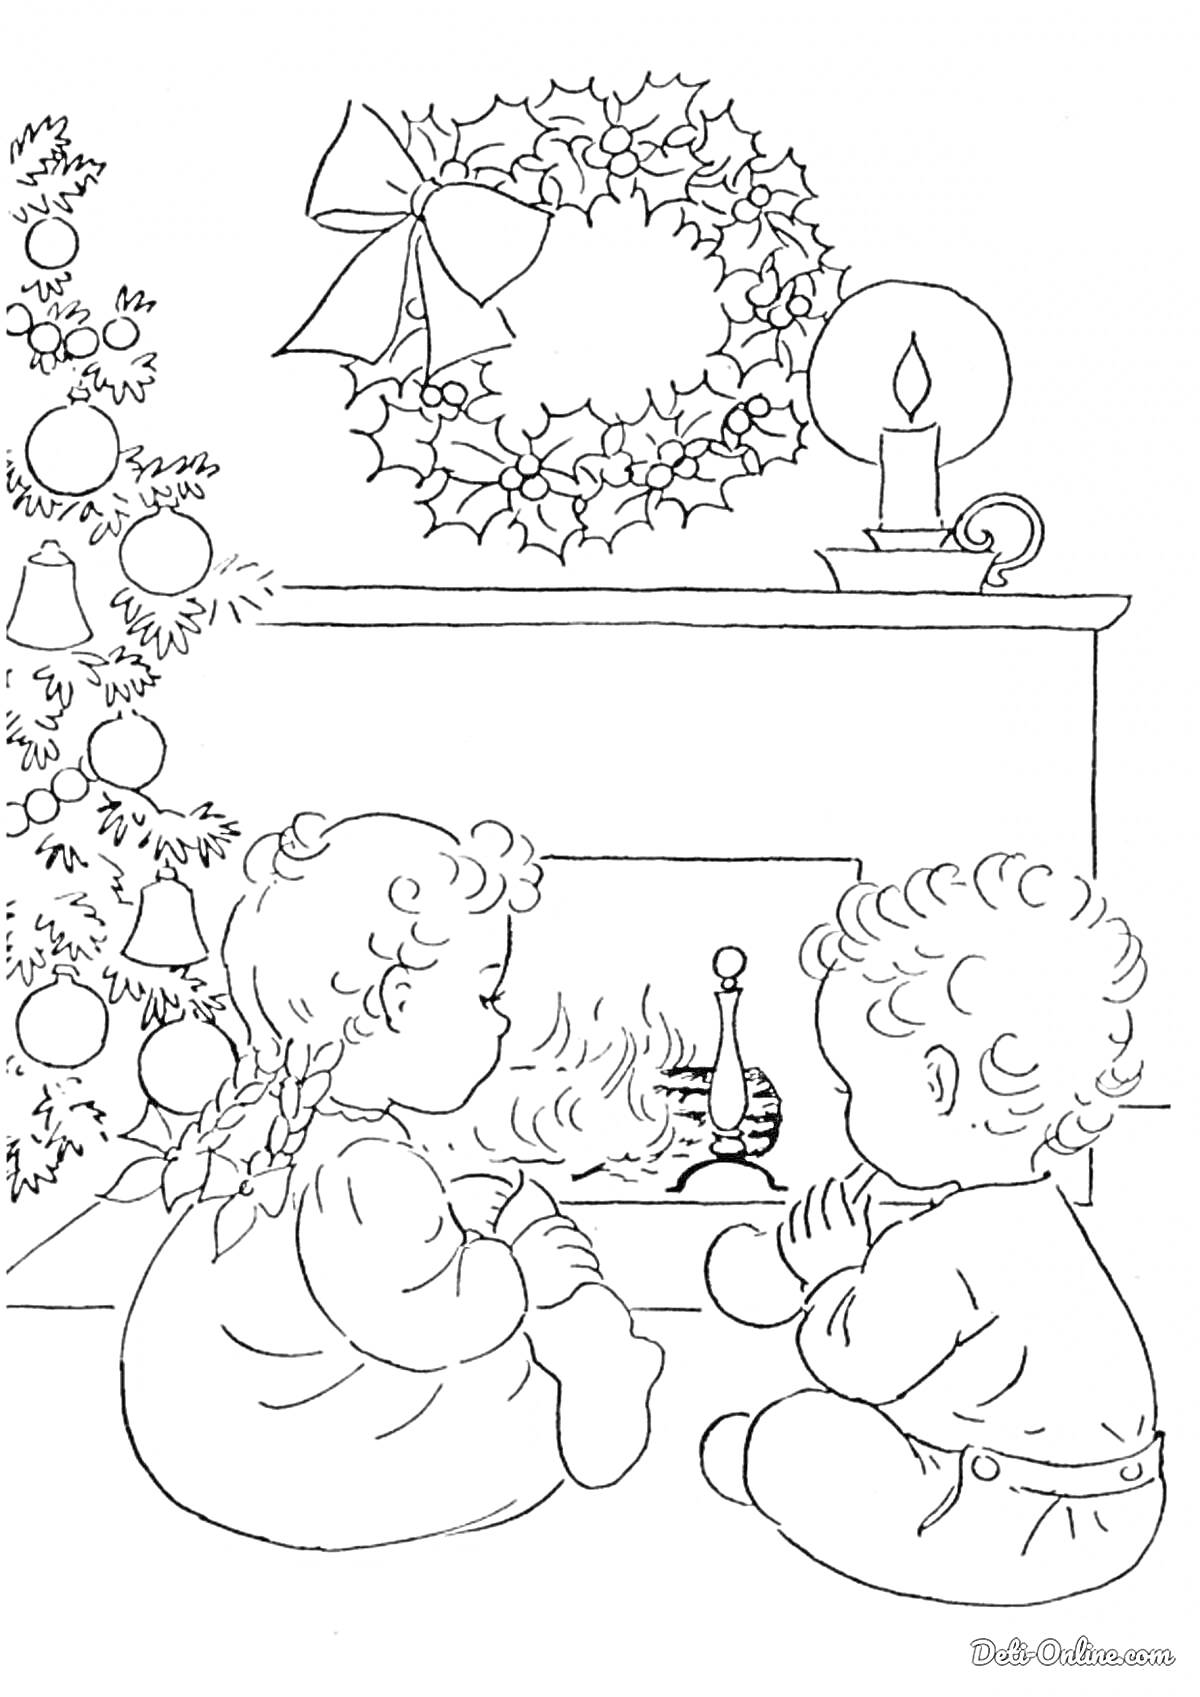 Раскраска Дети у камина с новогодней ёлкой и рождественским венком